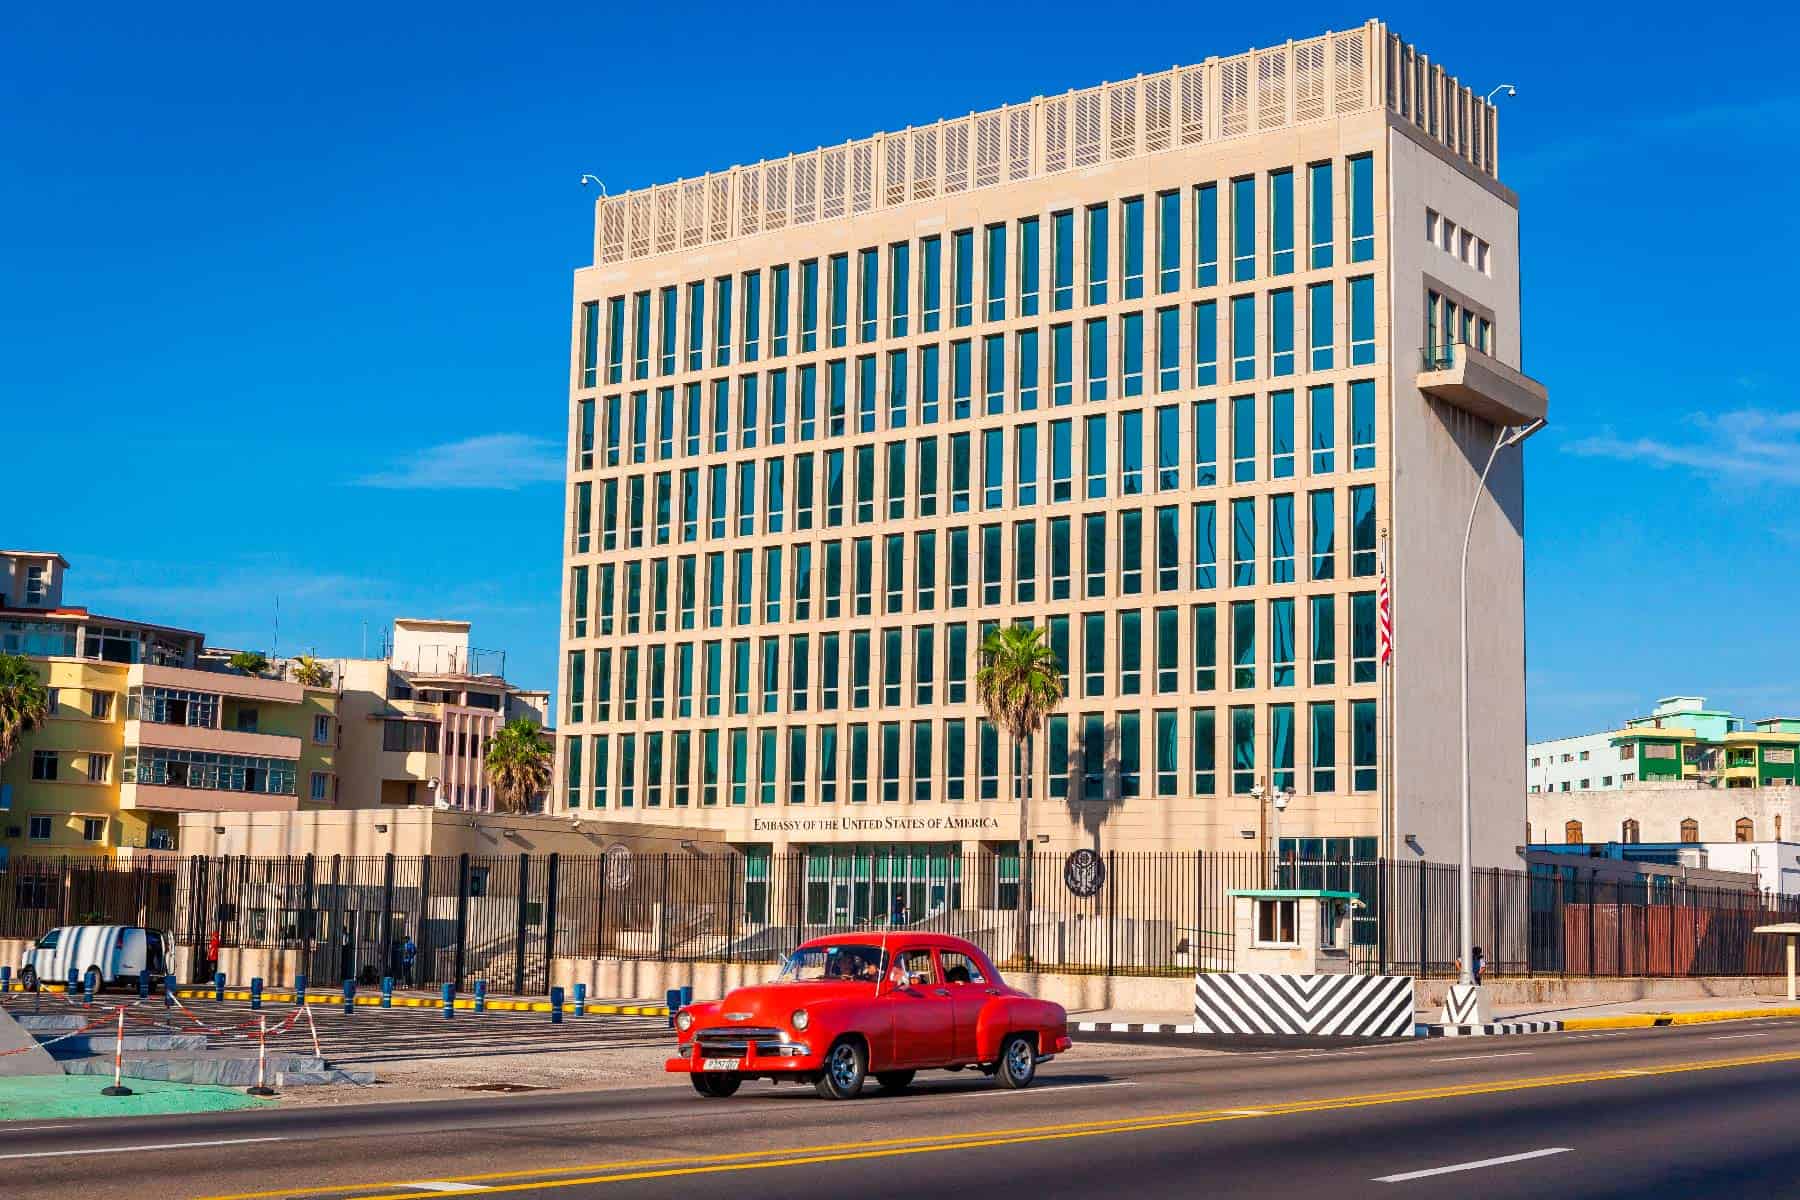 Comenzara la Embajada de Estados Unidos en Cuba